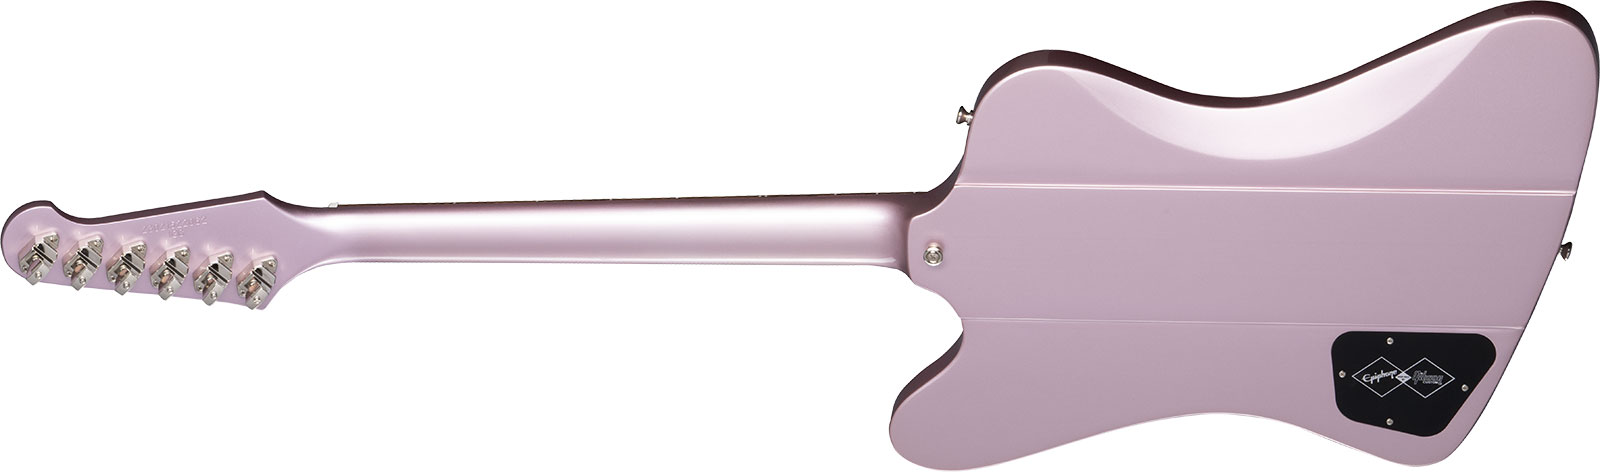 Epiphone Firebird I 1963 1mh Ht Lau - Heather Poly - Guitare Électrique RÉtro Rock - Variation 1